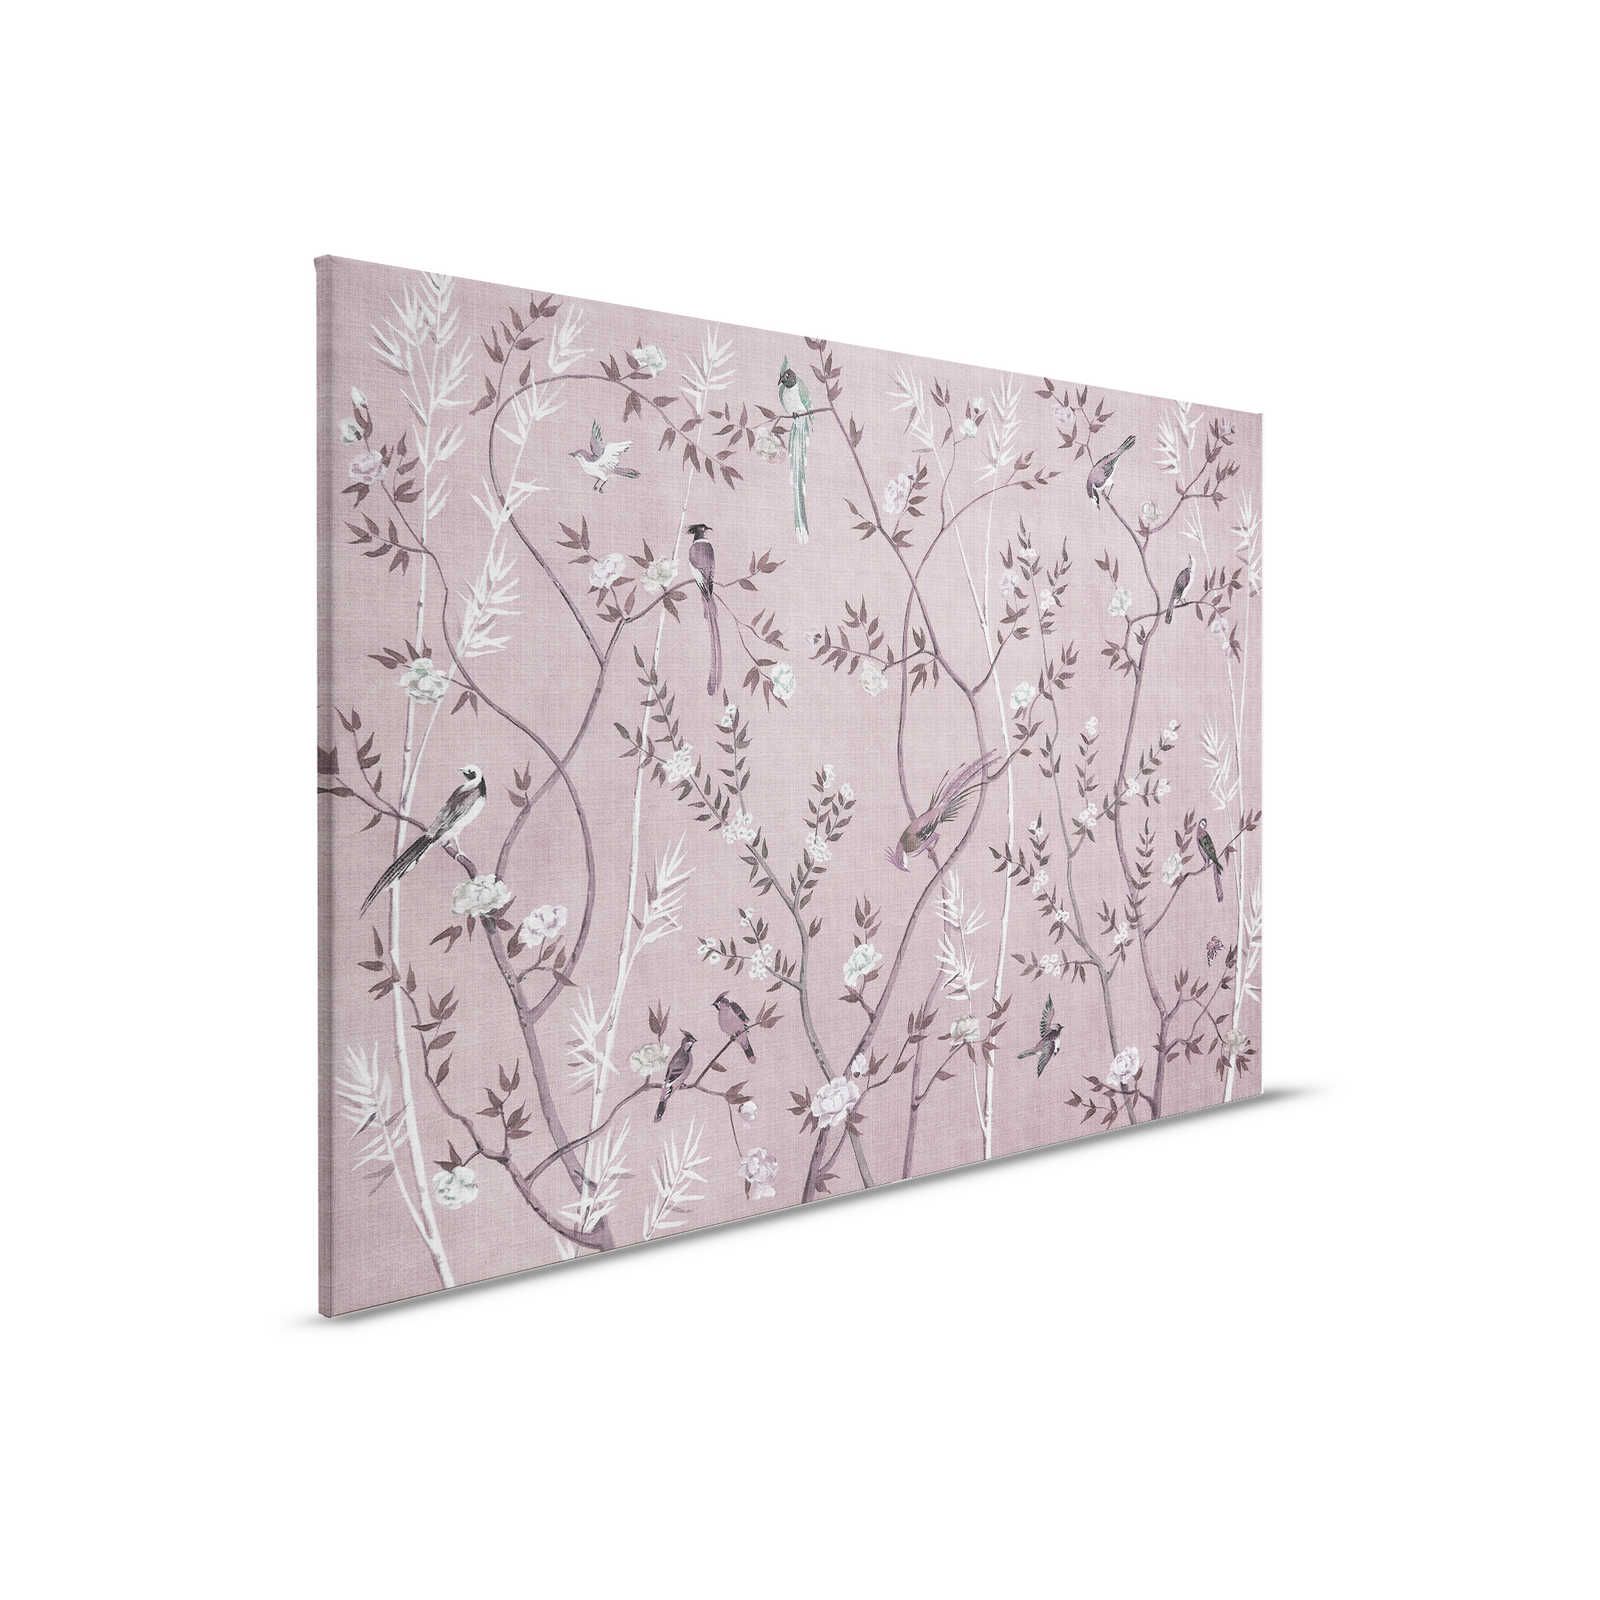 Tea Room 3 - Leinwandbild Vögel & Blüten Design in Rosa & Weiß – 0,90 m x 0,60 m
